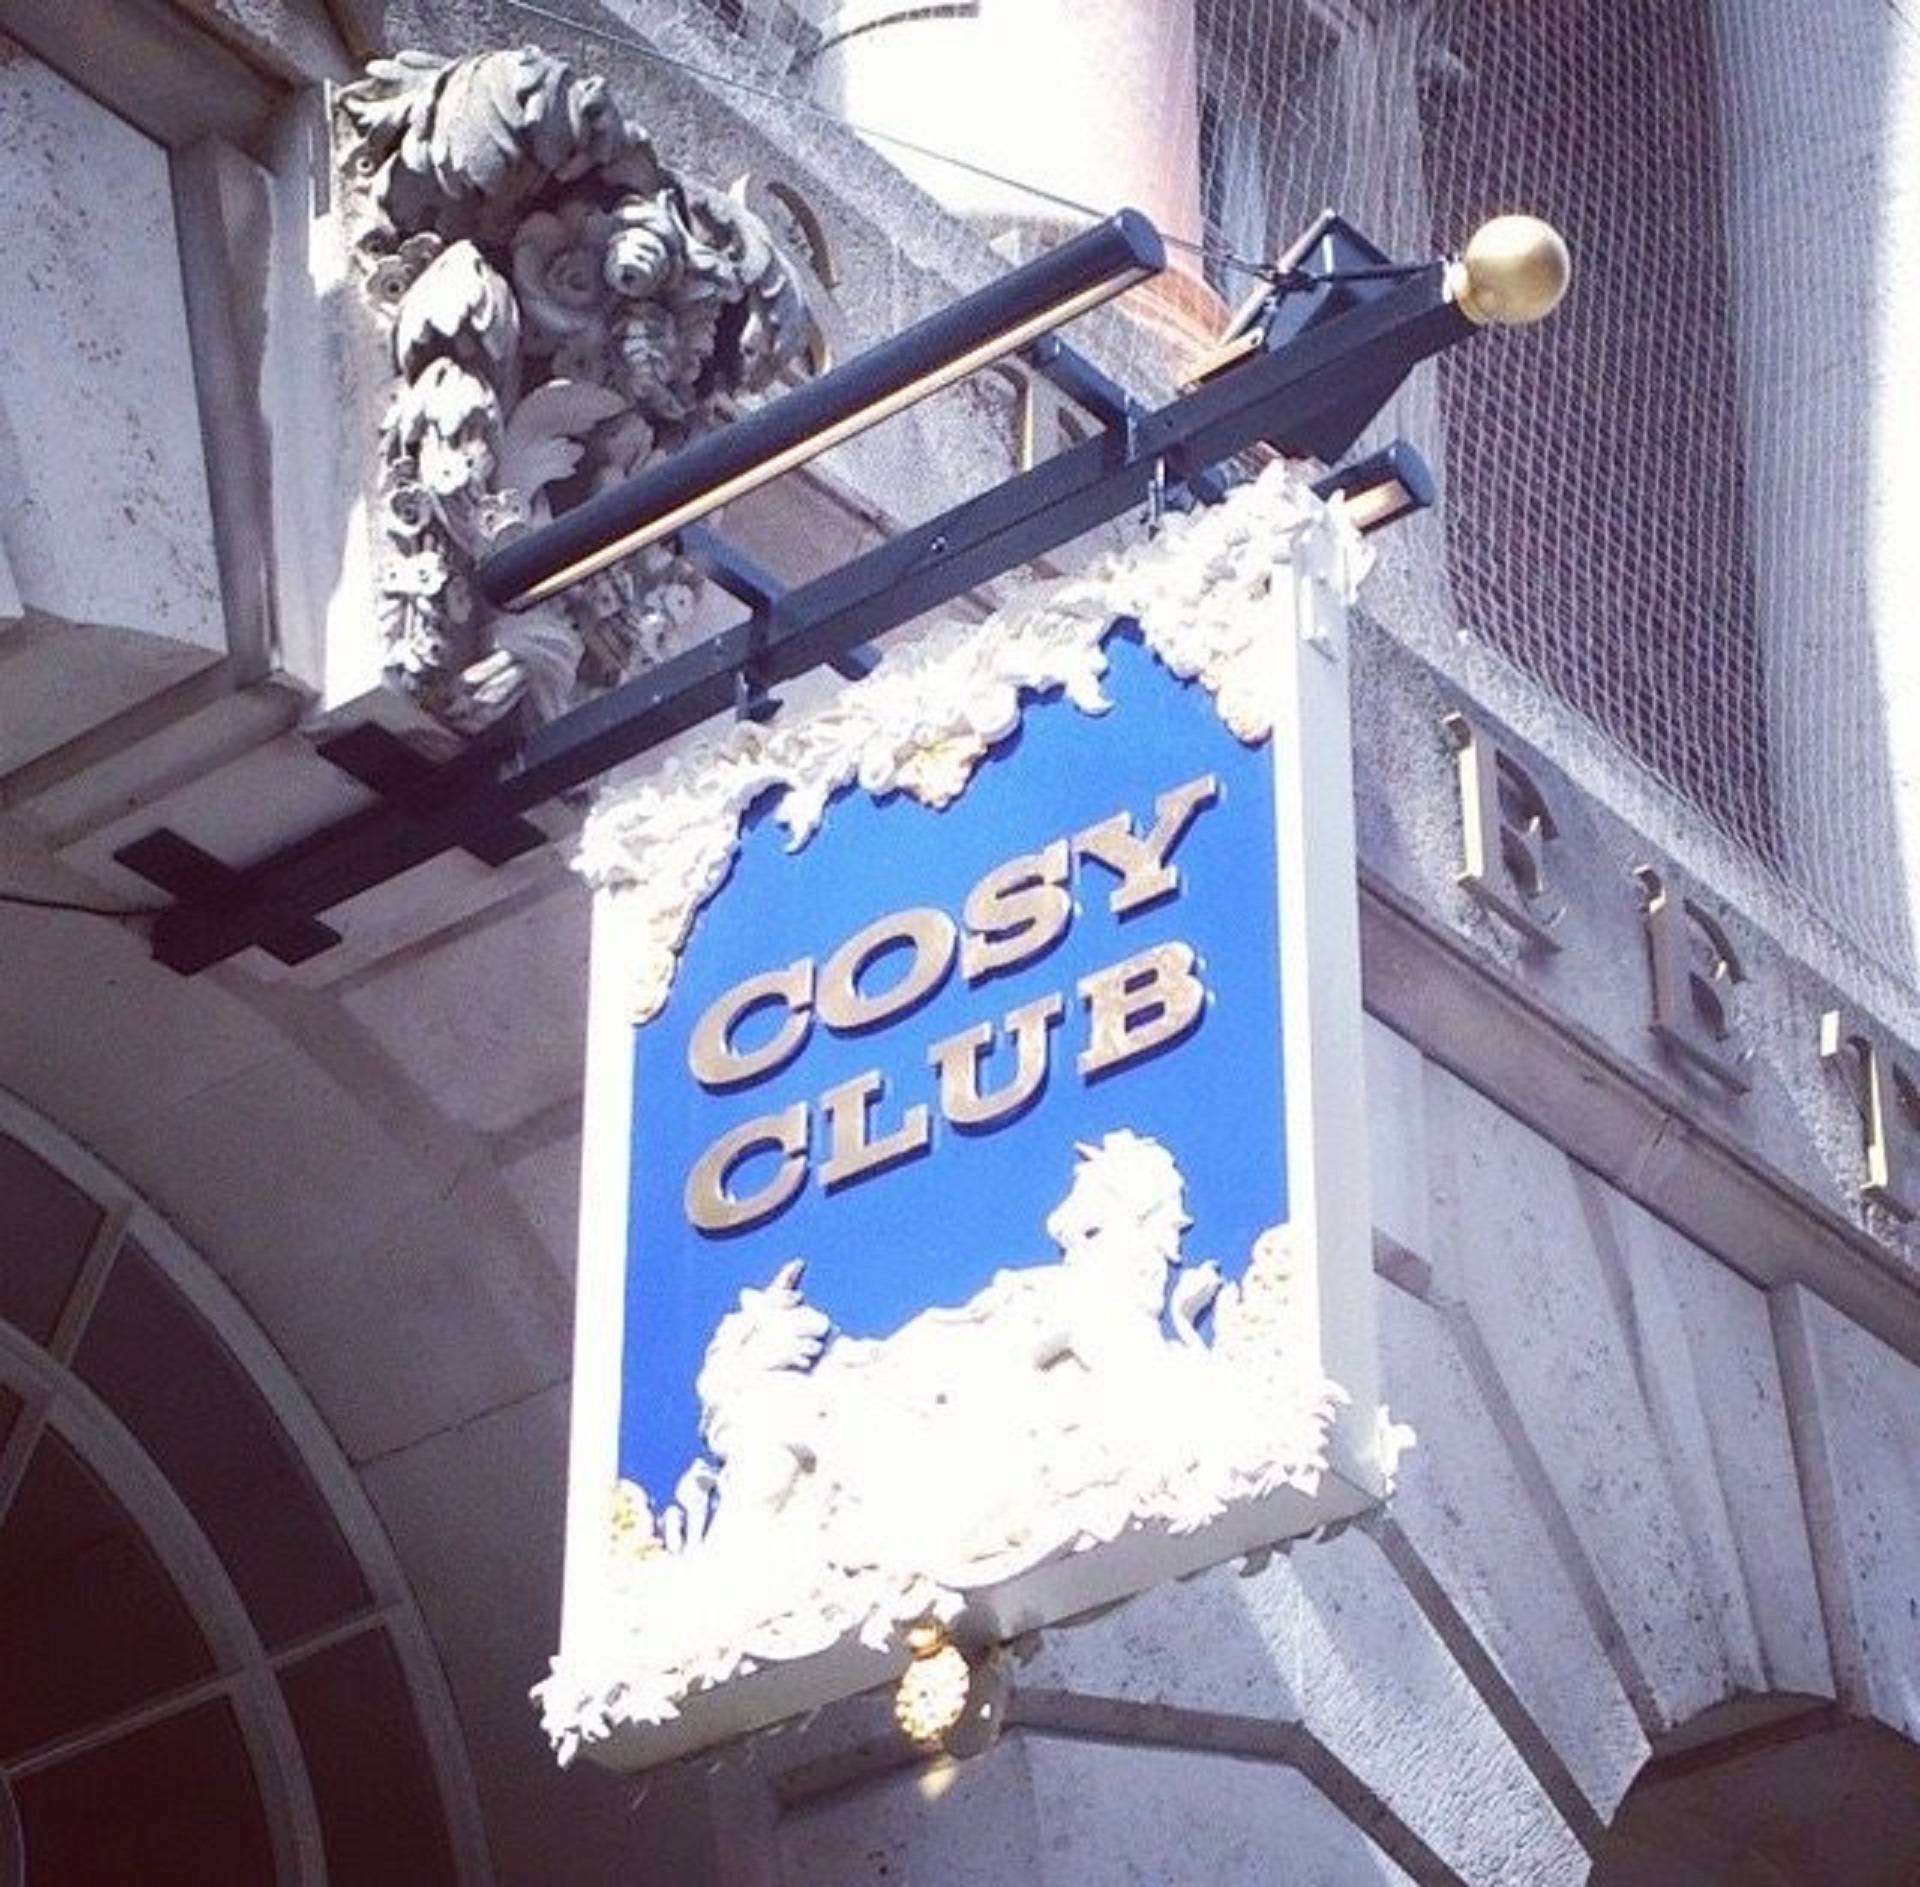 The Cosy Club - Bristol